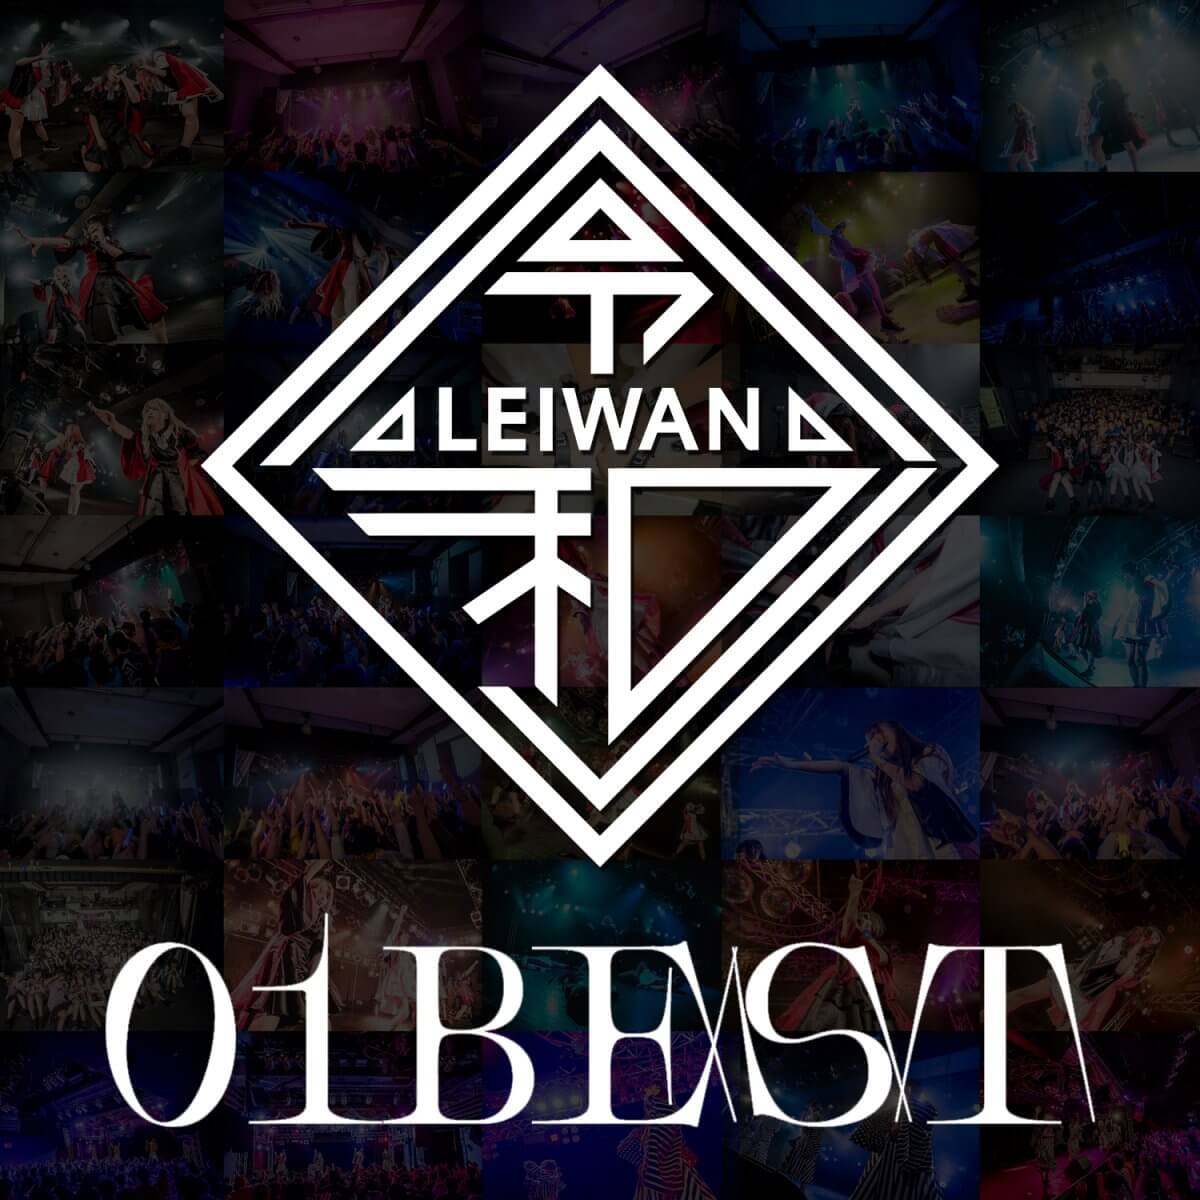 LEIWAN_01BEST